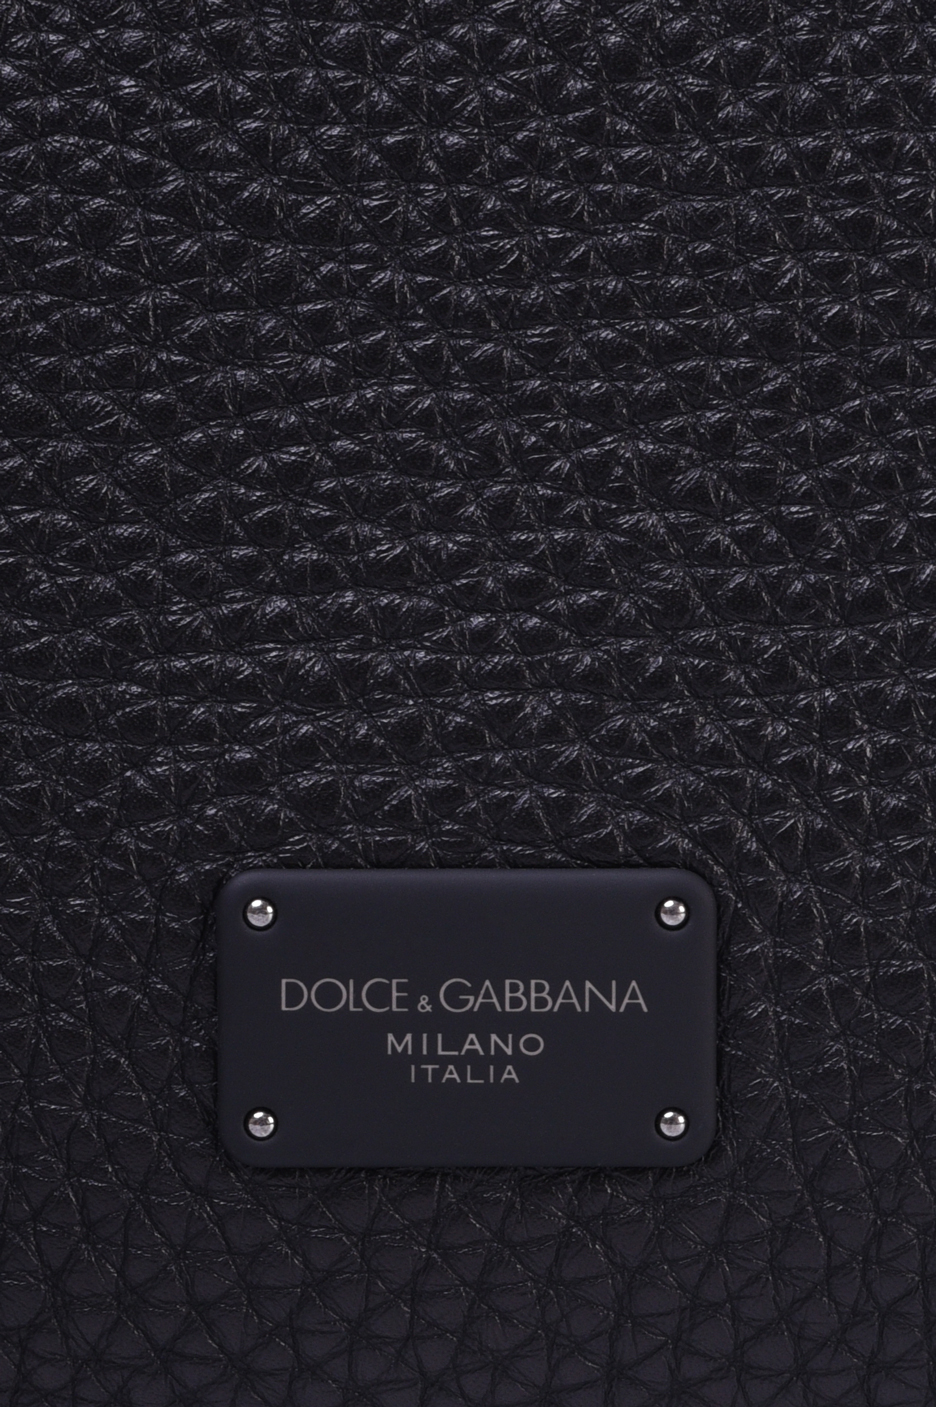 Рюкзак DOLCE & GABBANA BM1980 AZ319, цвет: Черный, Мужской